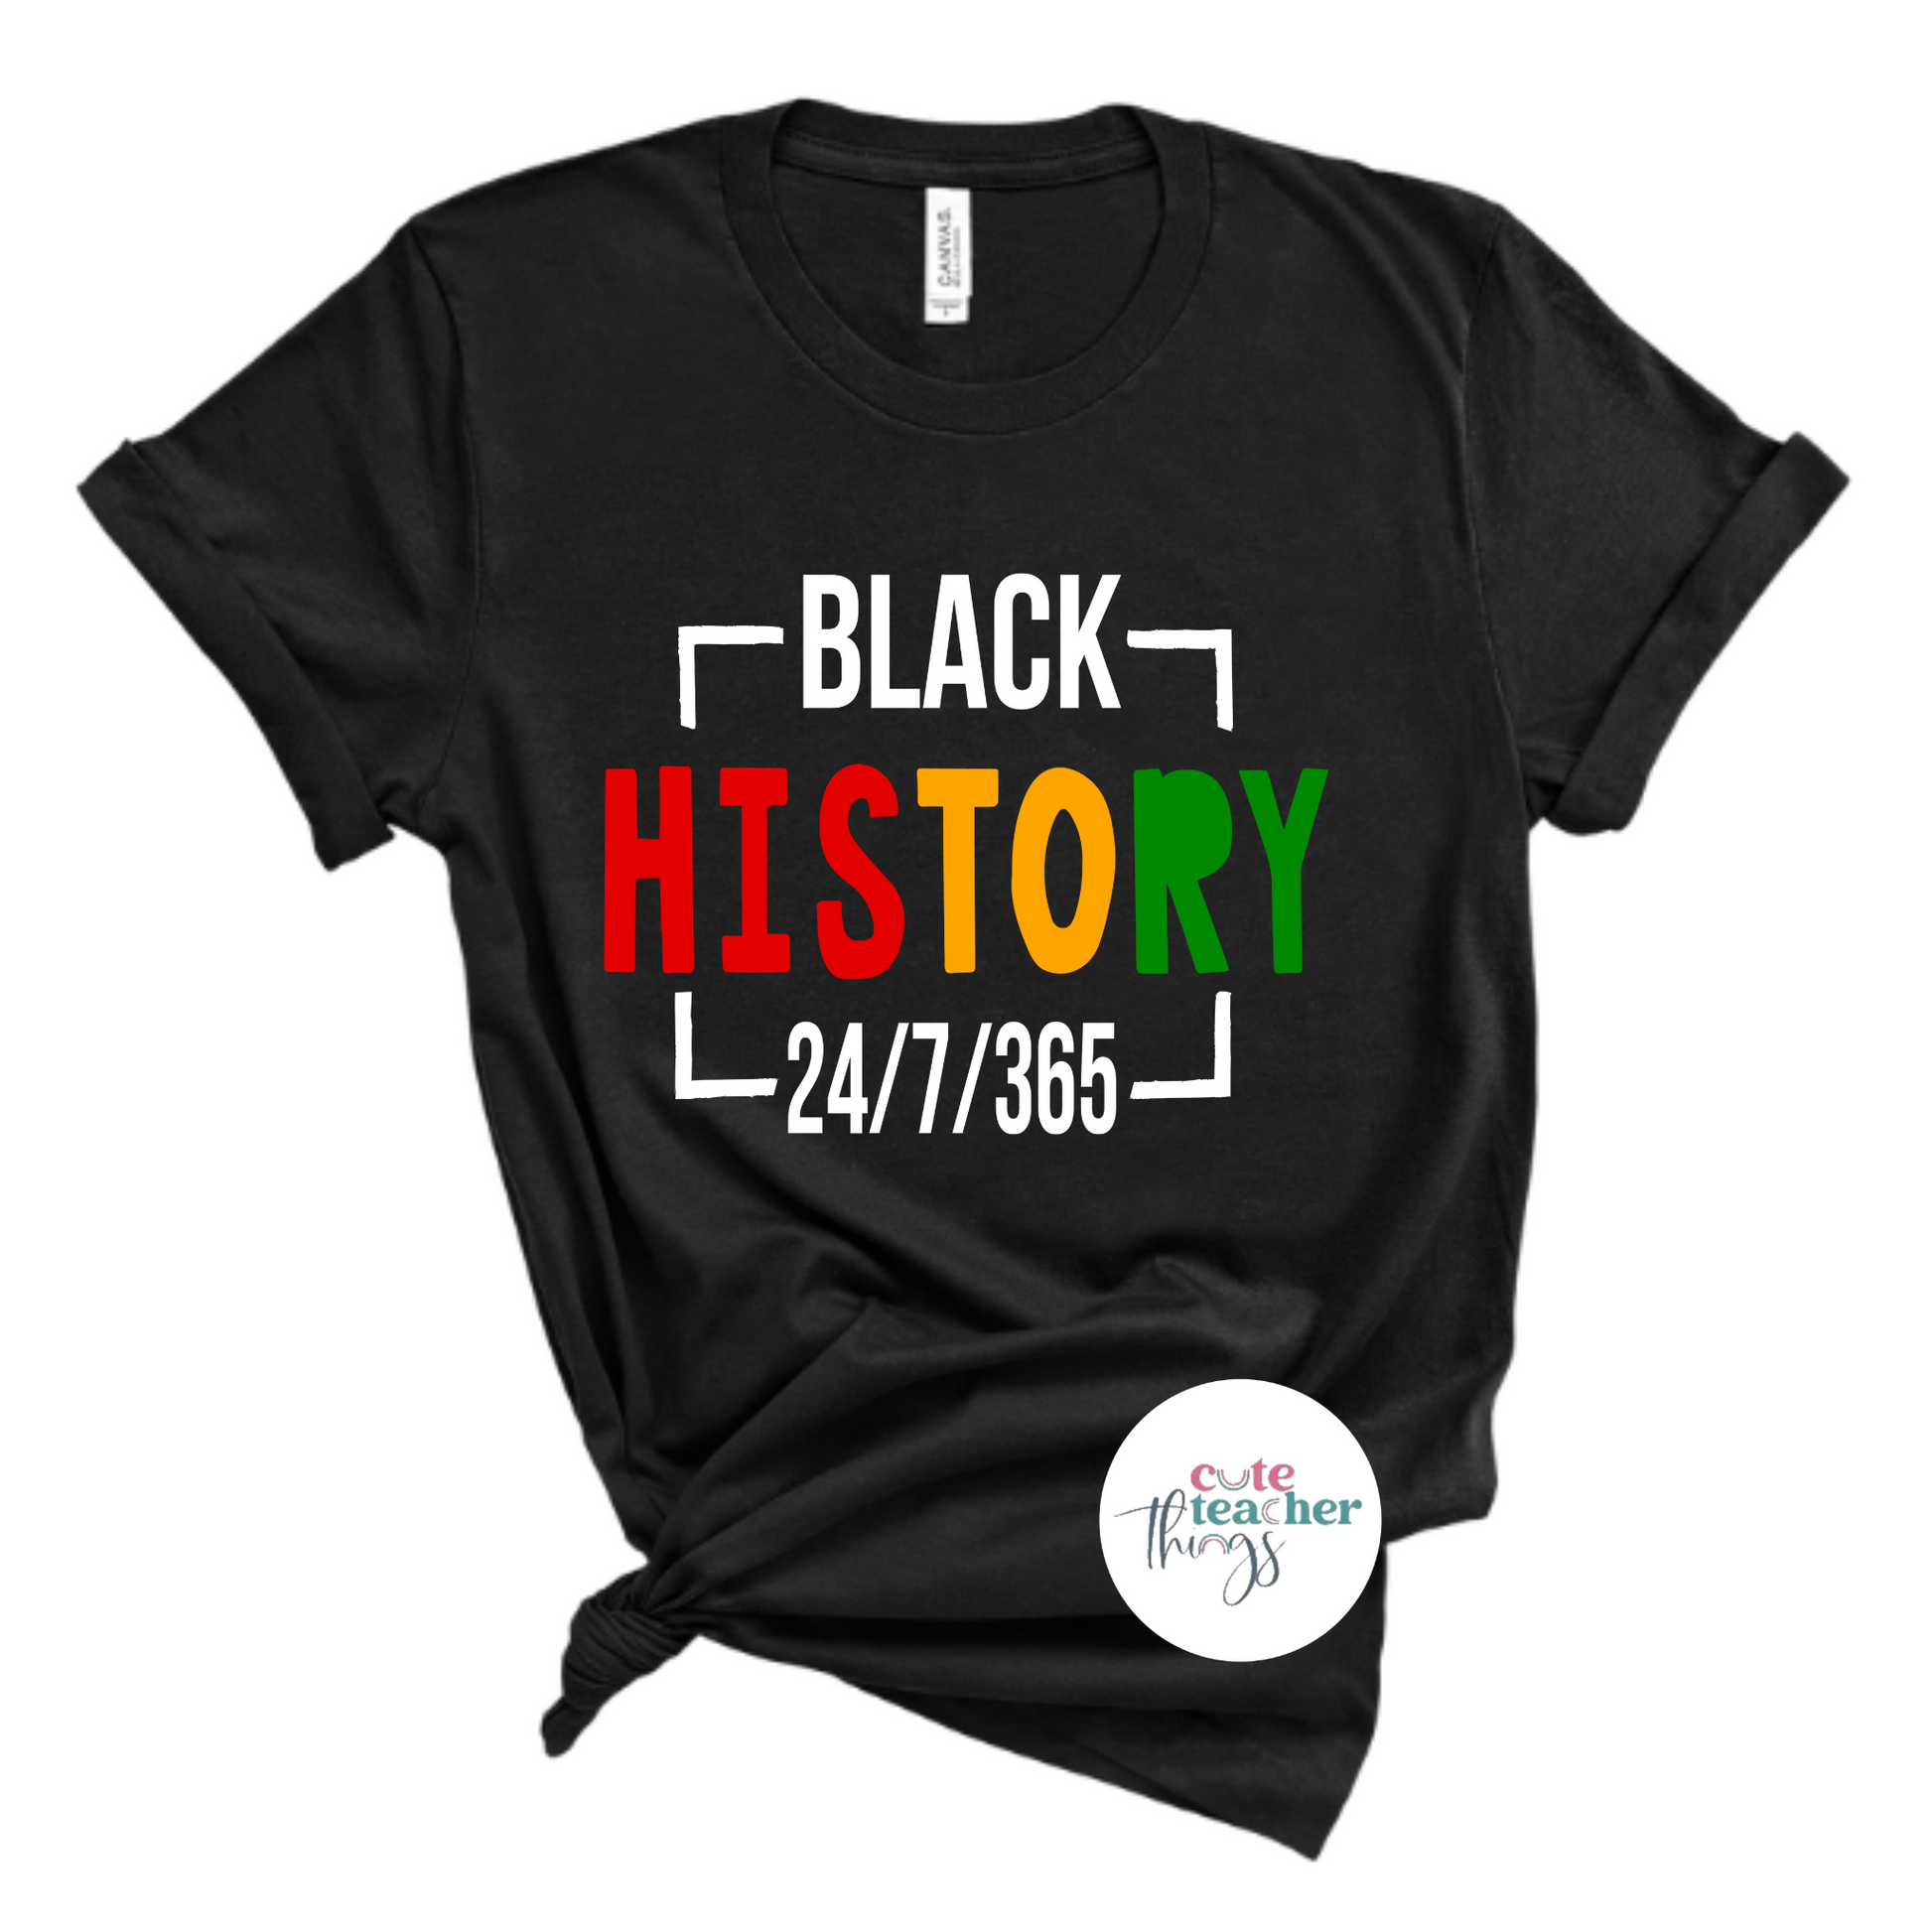 black history month t-shirt, juneteenth1865, black lives matter shirt